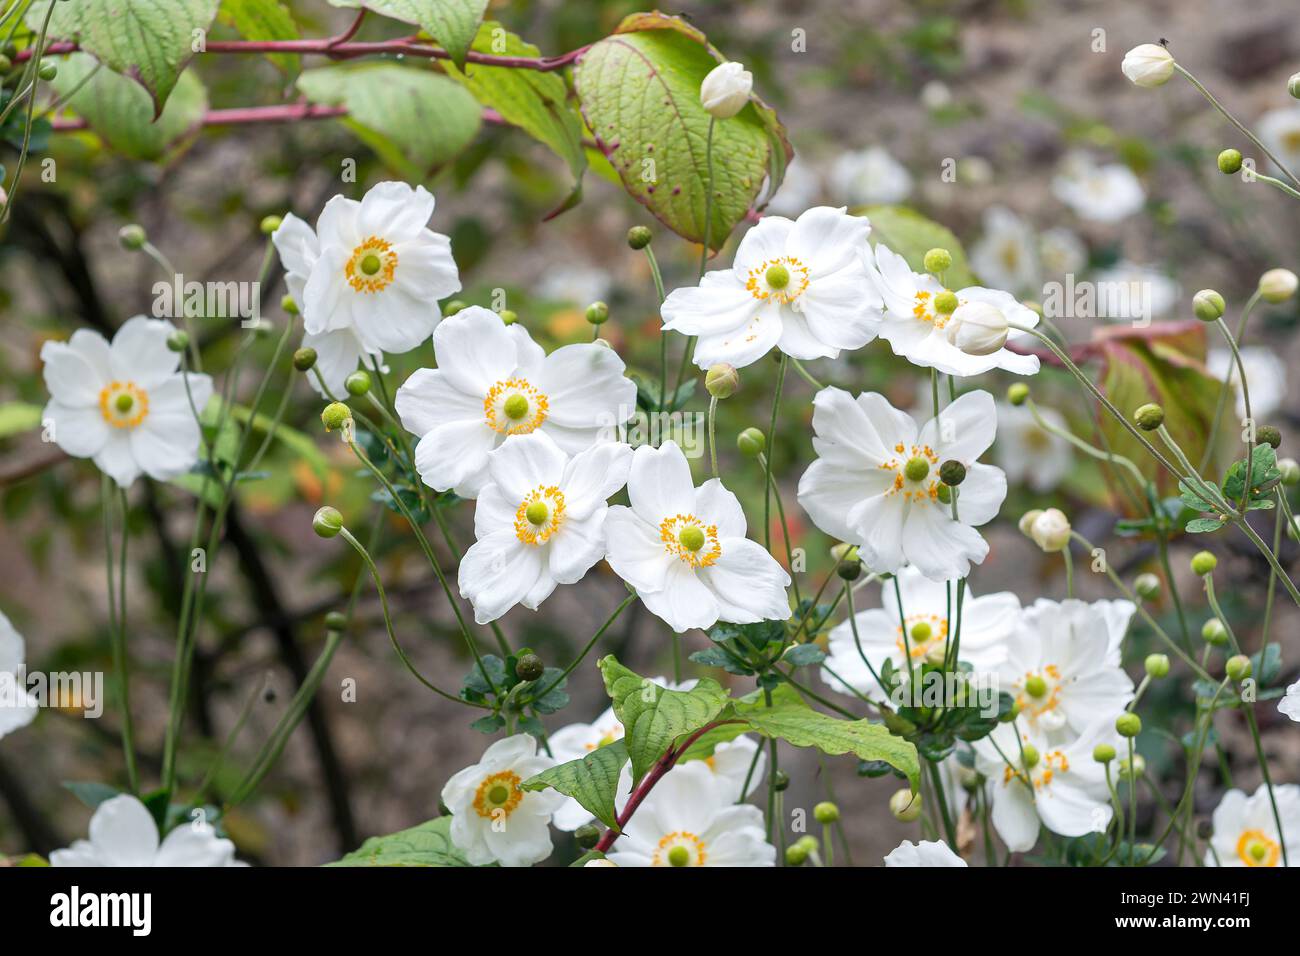 Herbst-Anemone (Anemone × hybrida 'Honorine Jobert') Stock Photo